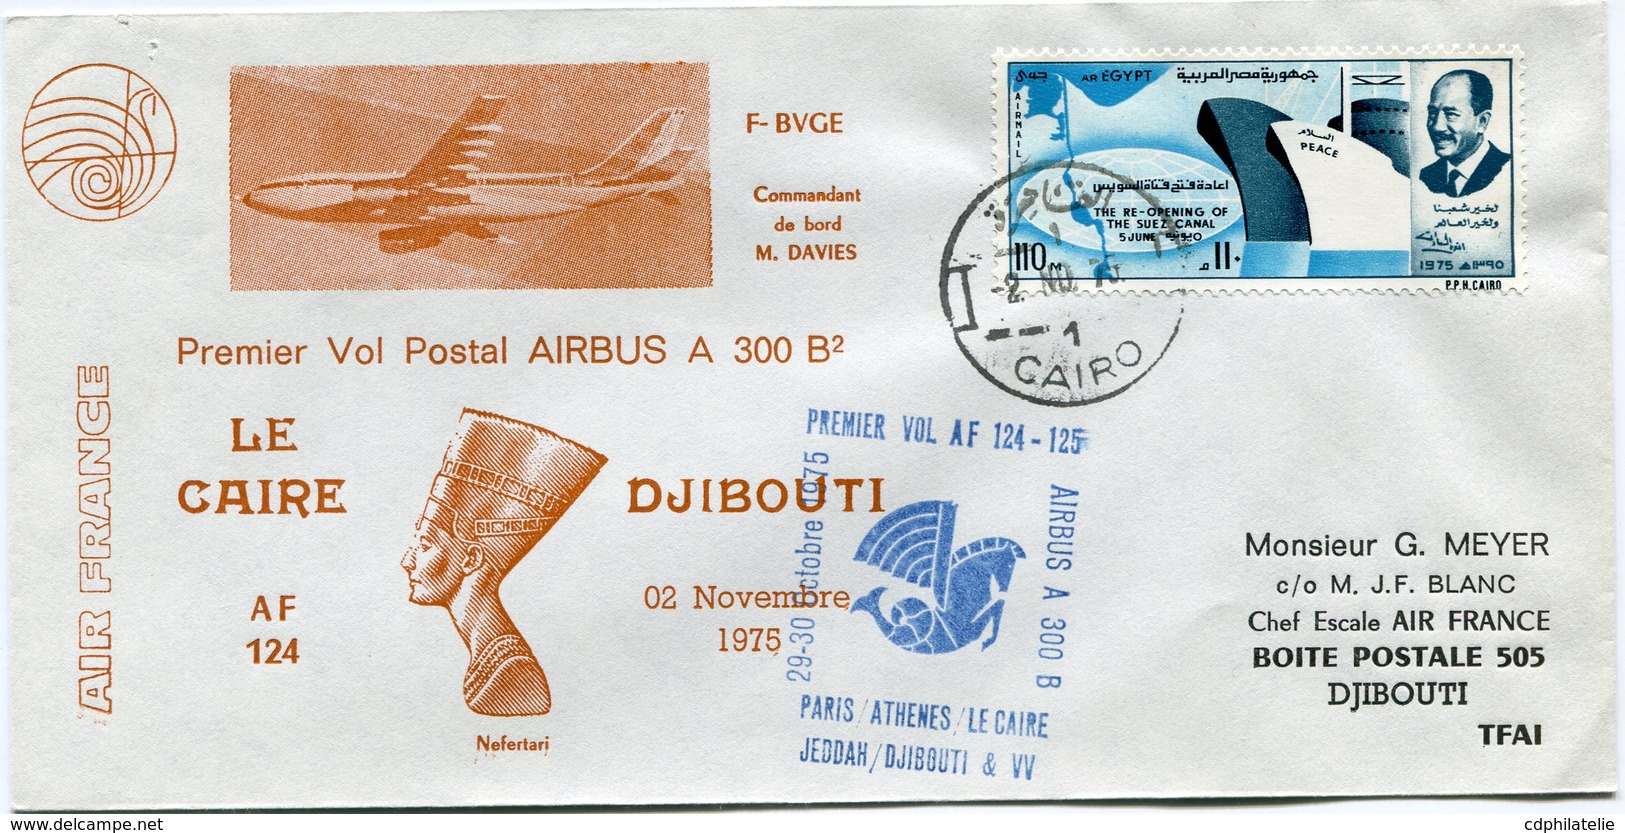 EGYPTE ENVELOPPE PREMIER VOL POSTAL AIRBUS A 300 B2 LE CAIRE - DJIBOUTI DU 02 NOVEMBRE 1975 - Poste Aérienne